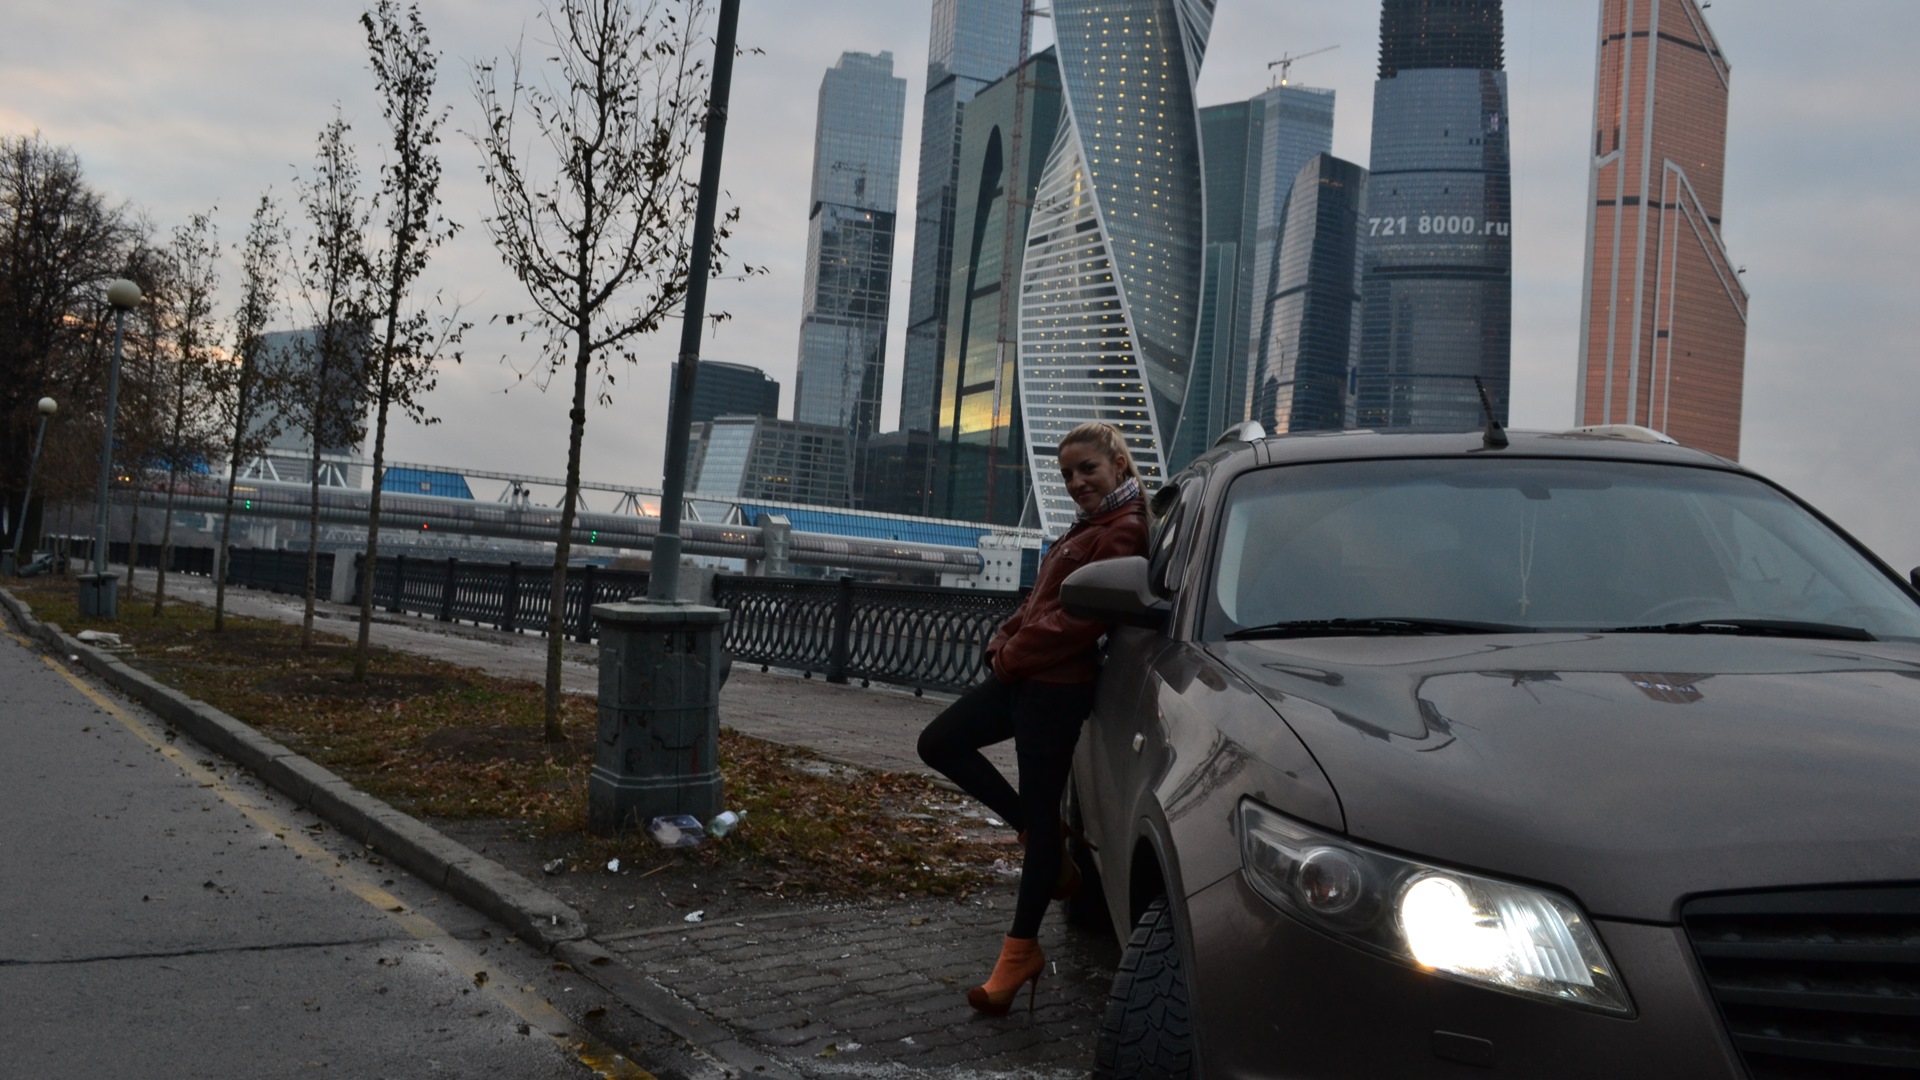 Красивые места для фото авто в москве